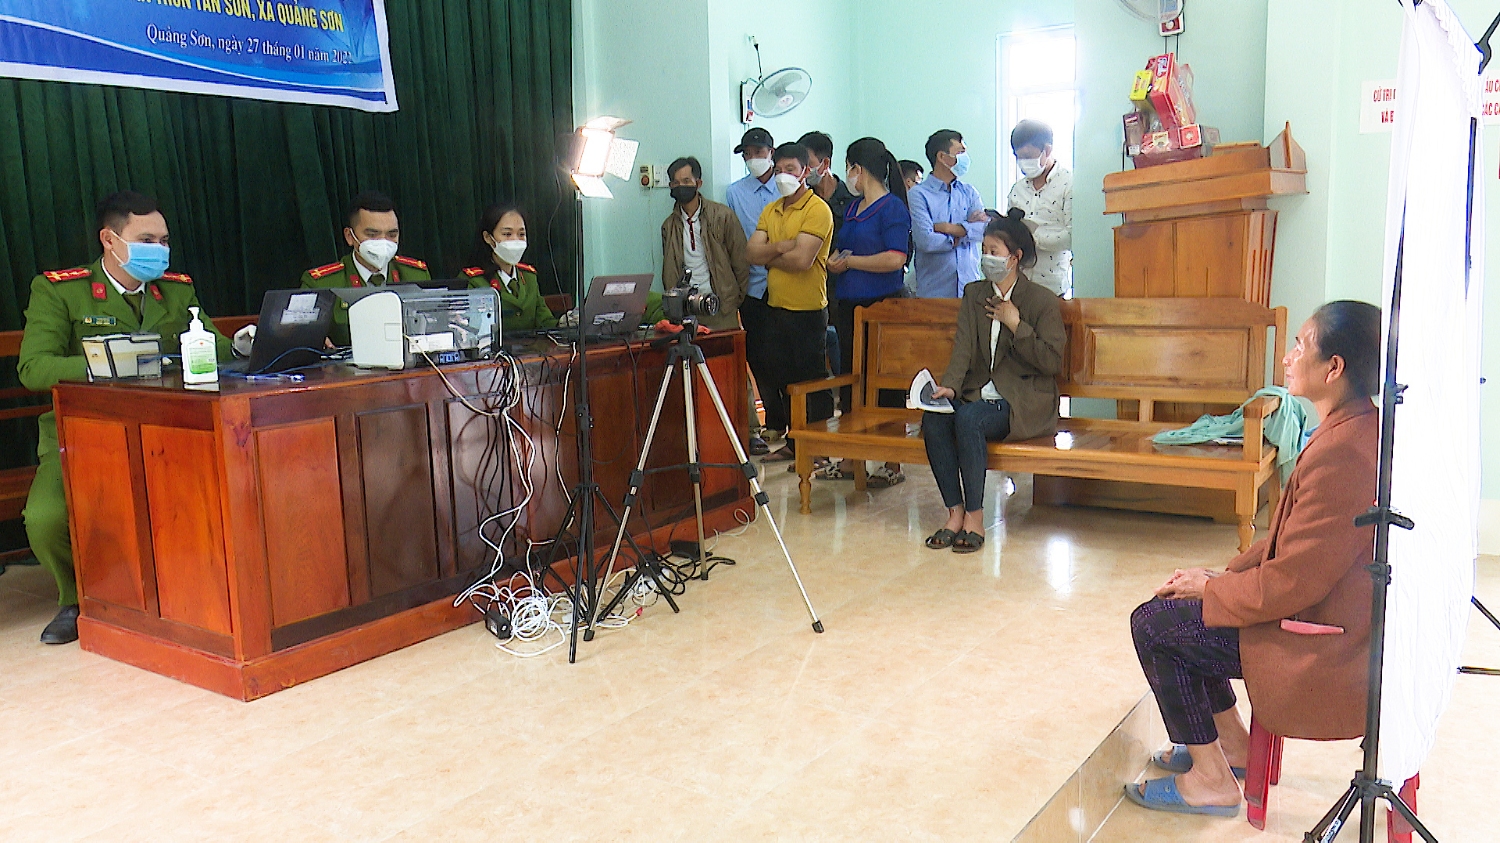 Đoàn cơ sở Công an thị xã hỗ trợ người dân làm căn cước công dân có gắn chíp điện tử tại thôn Tân Sơn, xã Quảng Sơn